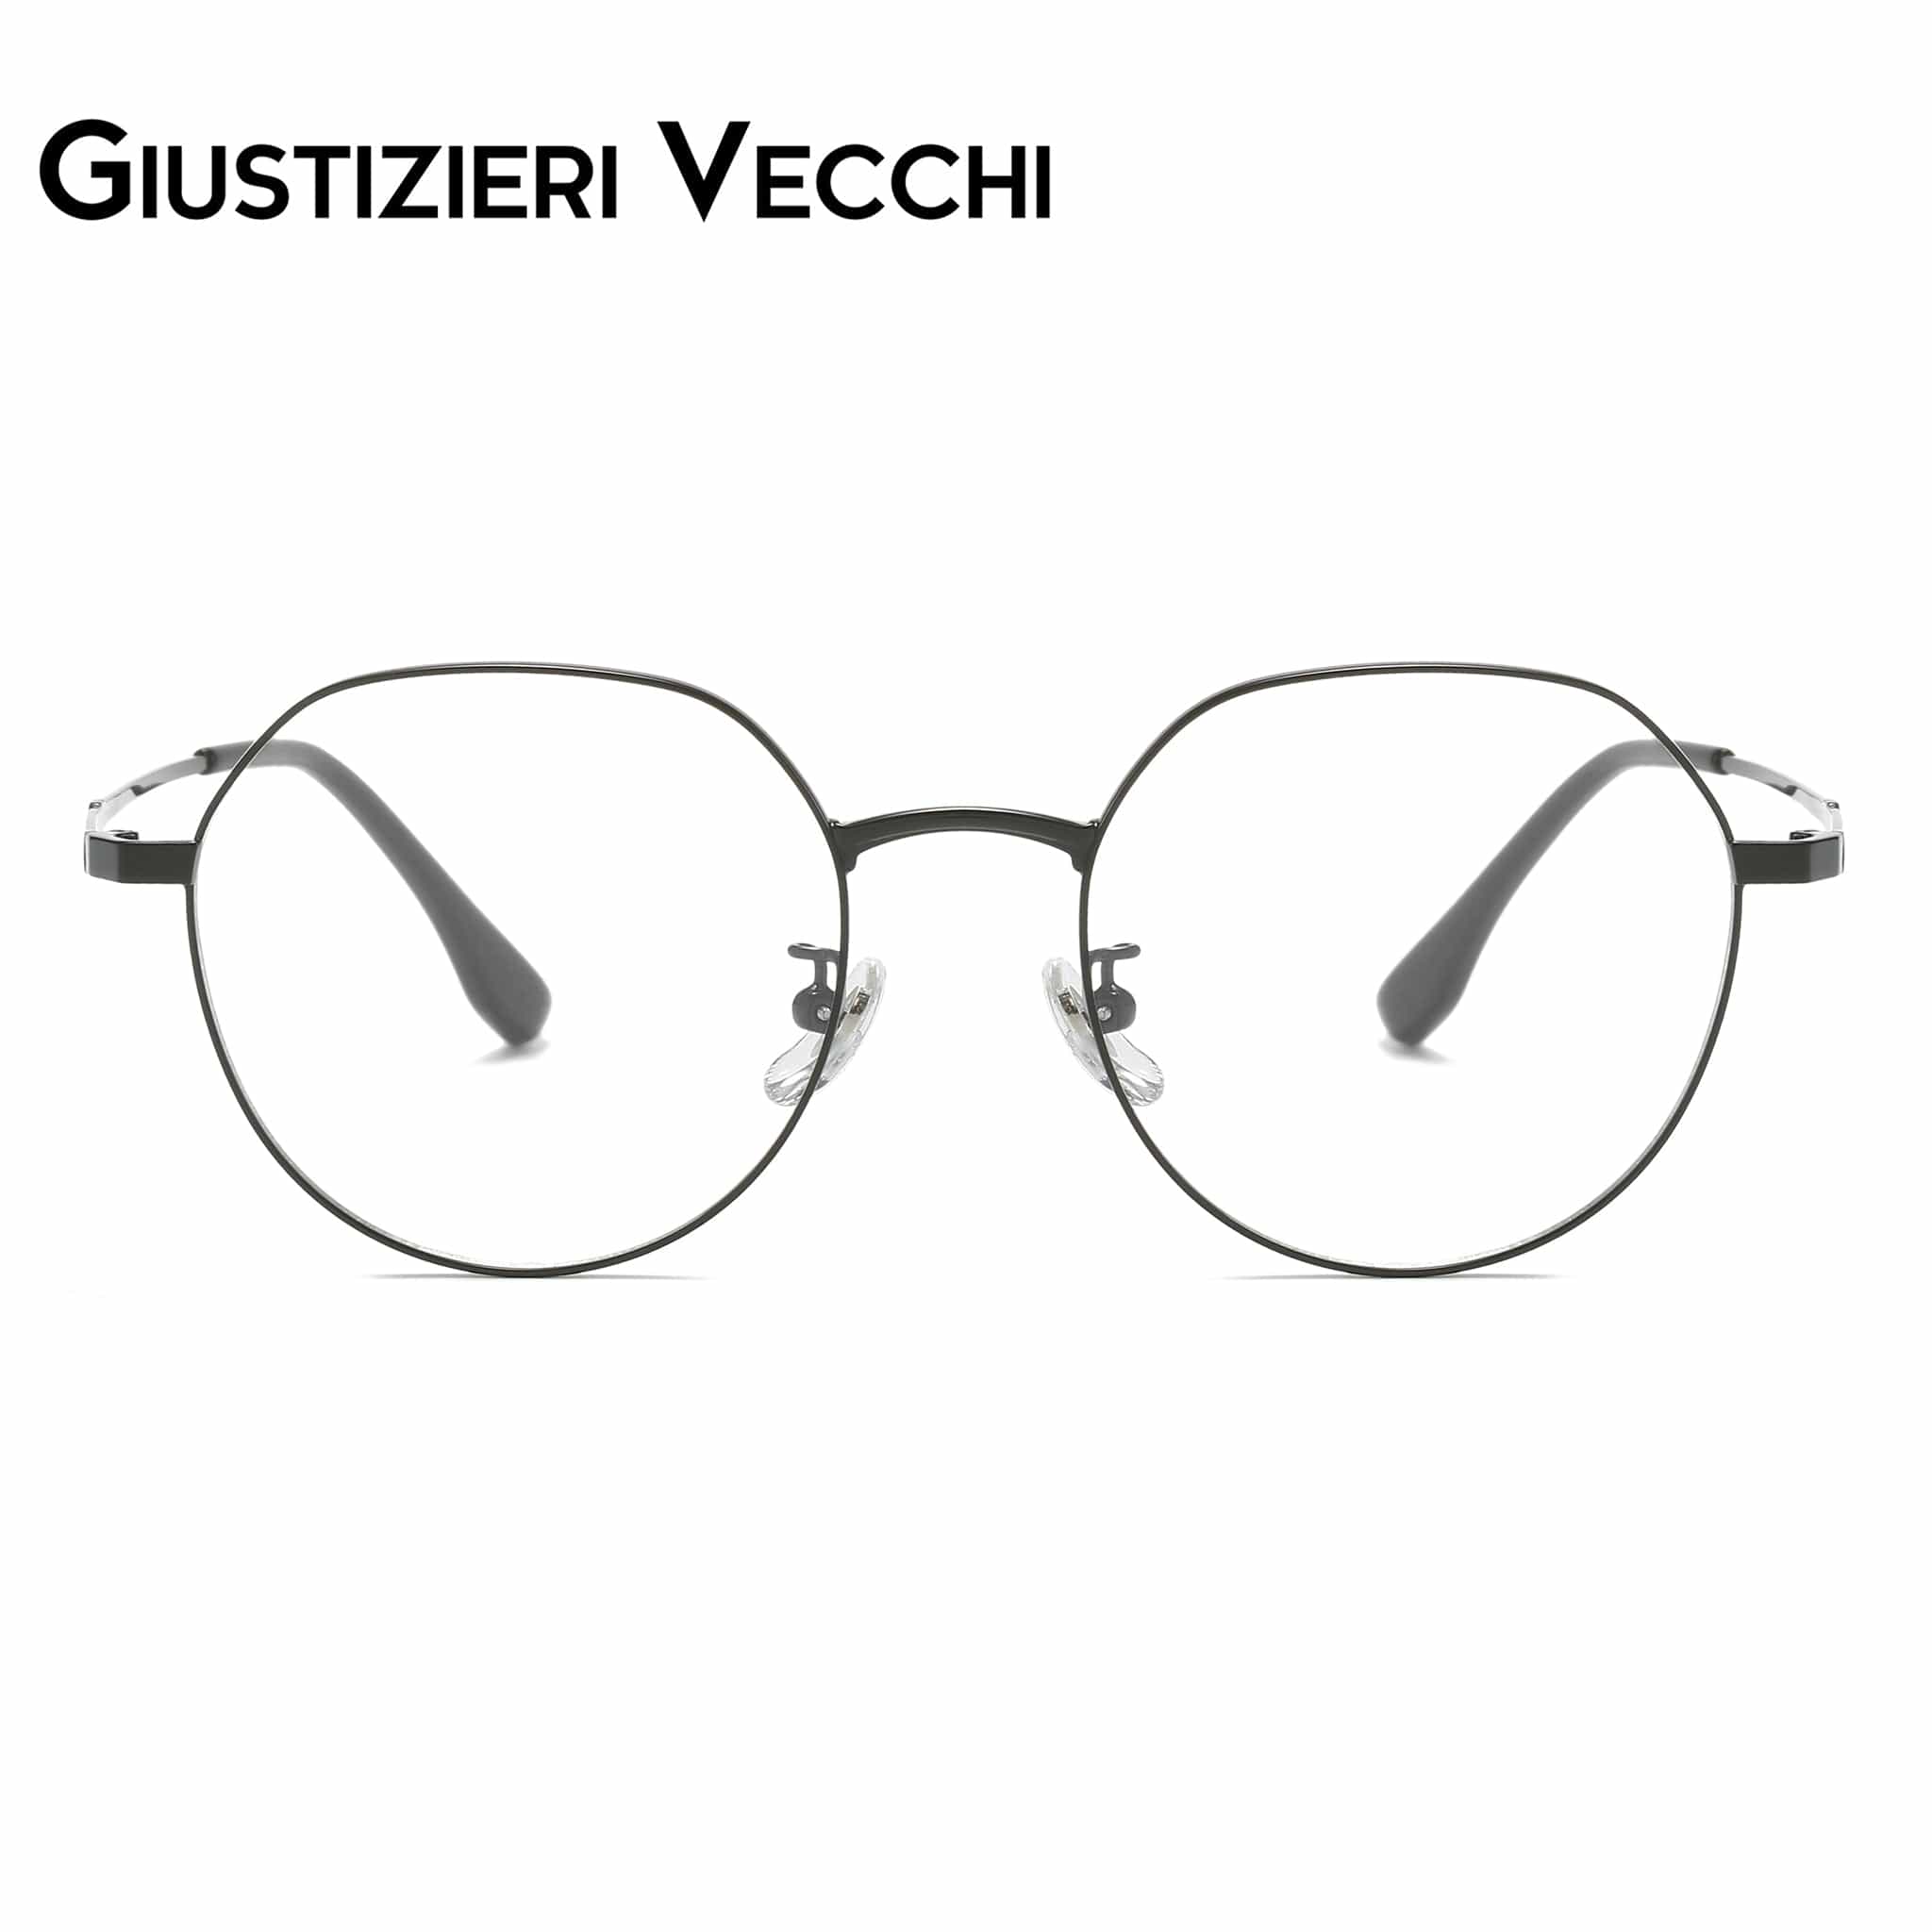 GIUSTIZIERI VECCHI Eyeglasses Small / Black CoolSonic Duo